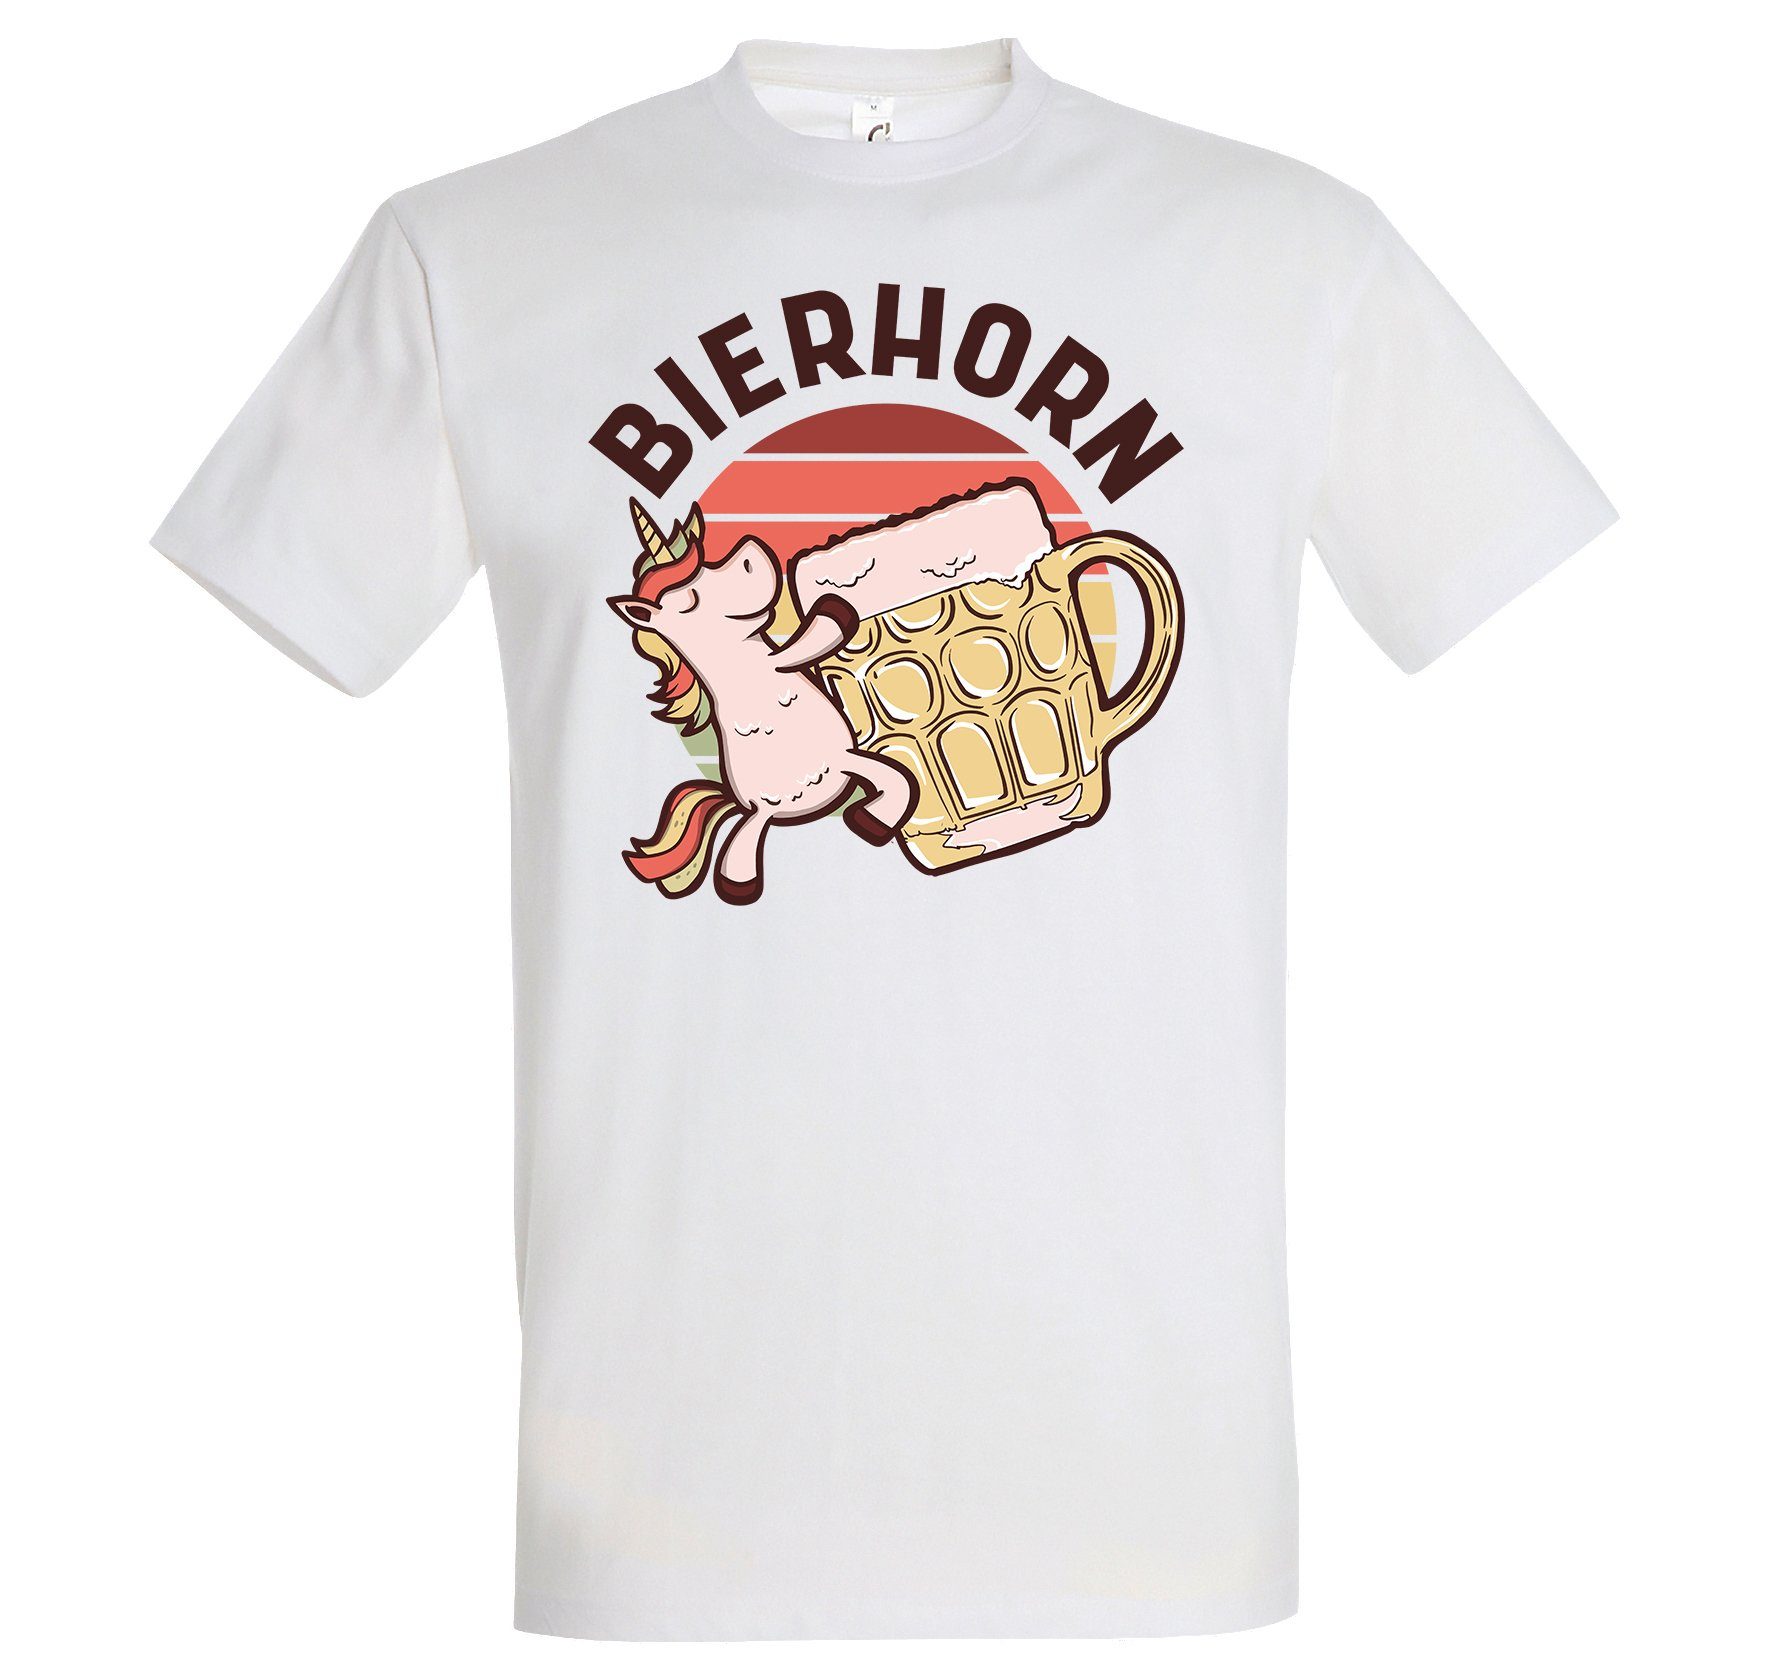 Youth Designz T-Shirt Bierhorn Herren T-Shirts mit lustigem Spruch Weiß